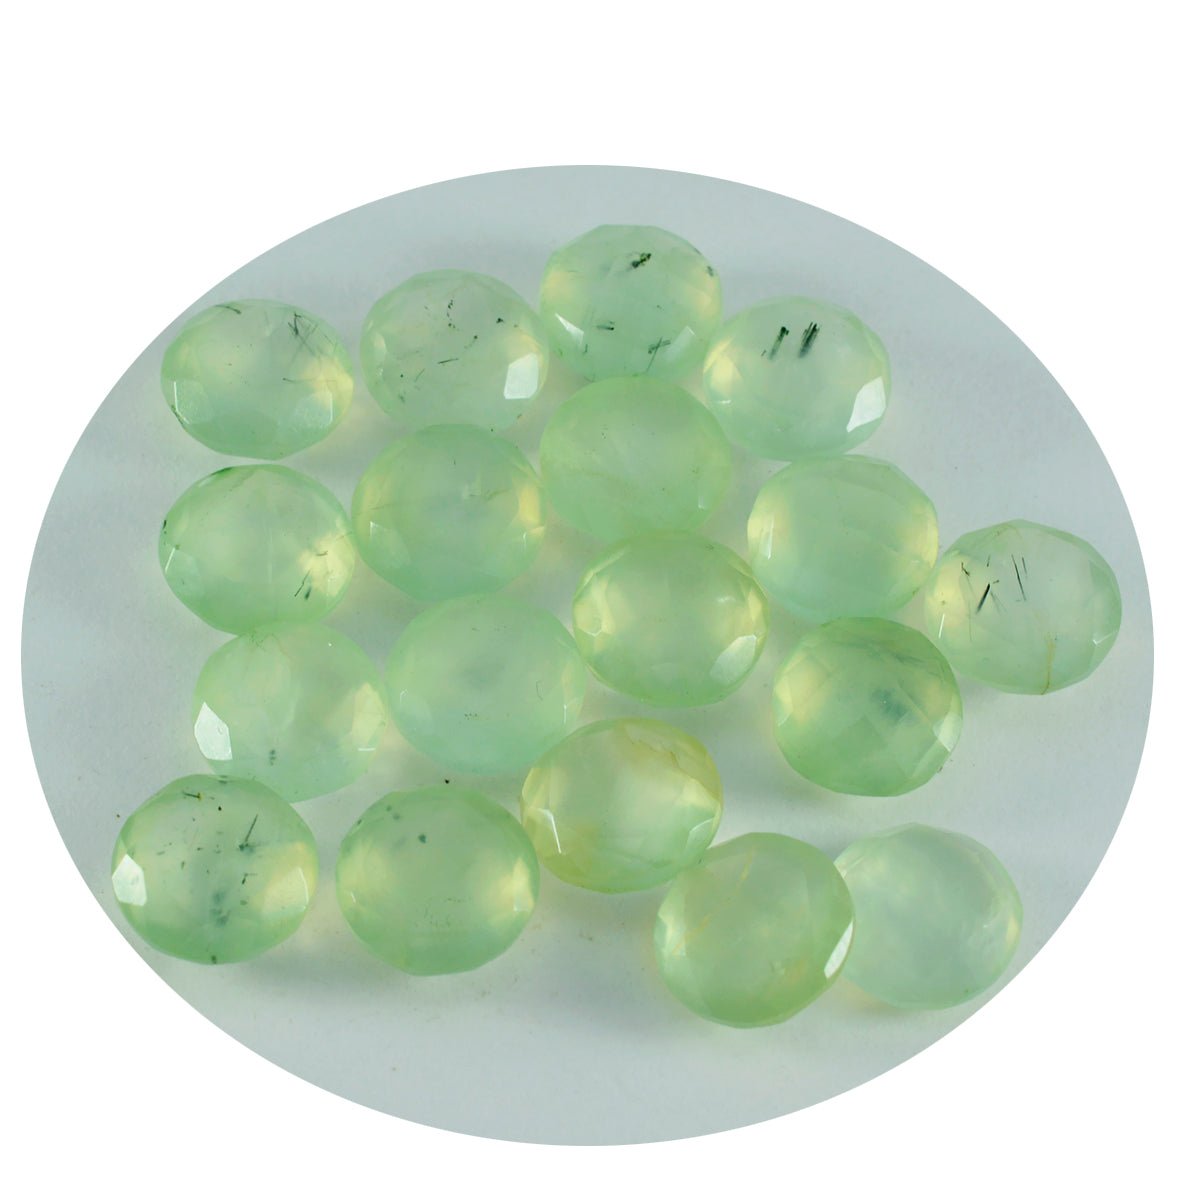 riyogems 1шт зеленый пренит ограненный 7x7 мм круглая форма качественный сыпучий драгоценный камень